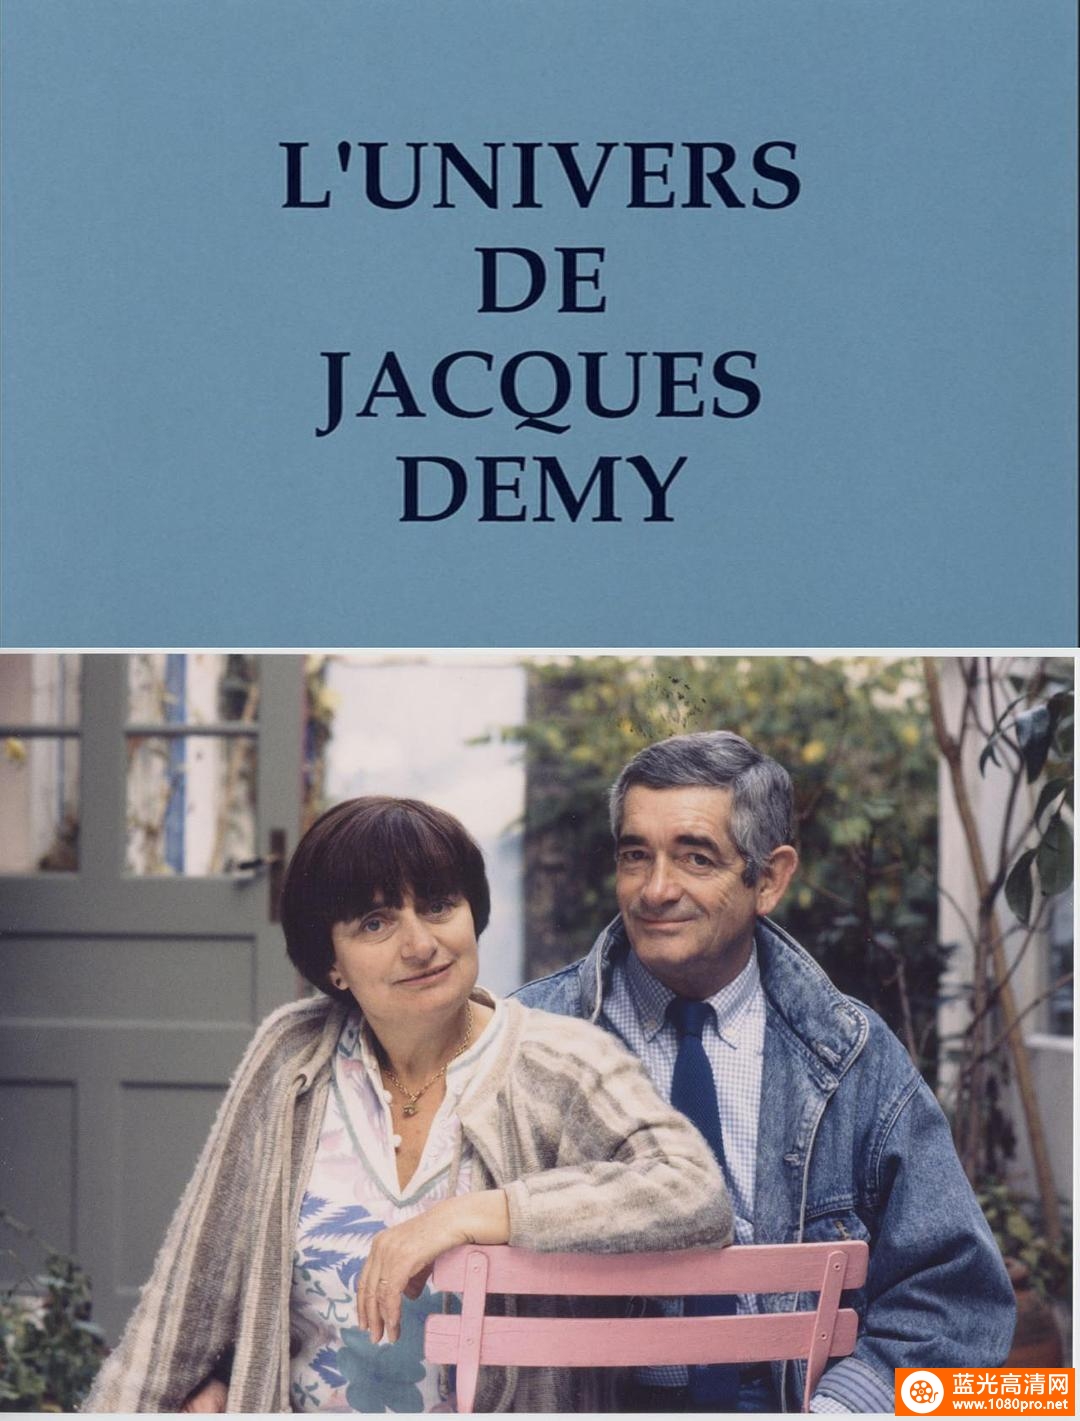 雅克·德米的世界 The.World.of.Jacques.Demy.1995.1080p.BluRay.x264-BiPOLAR 6.56GB-1.png